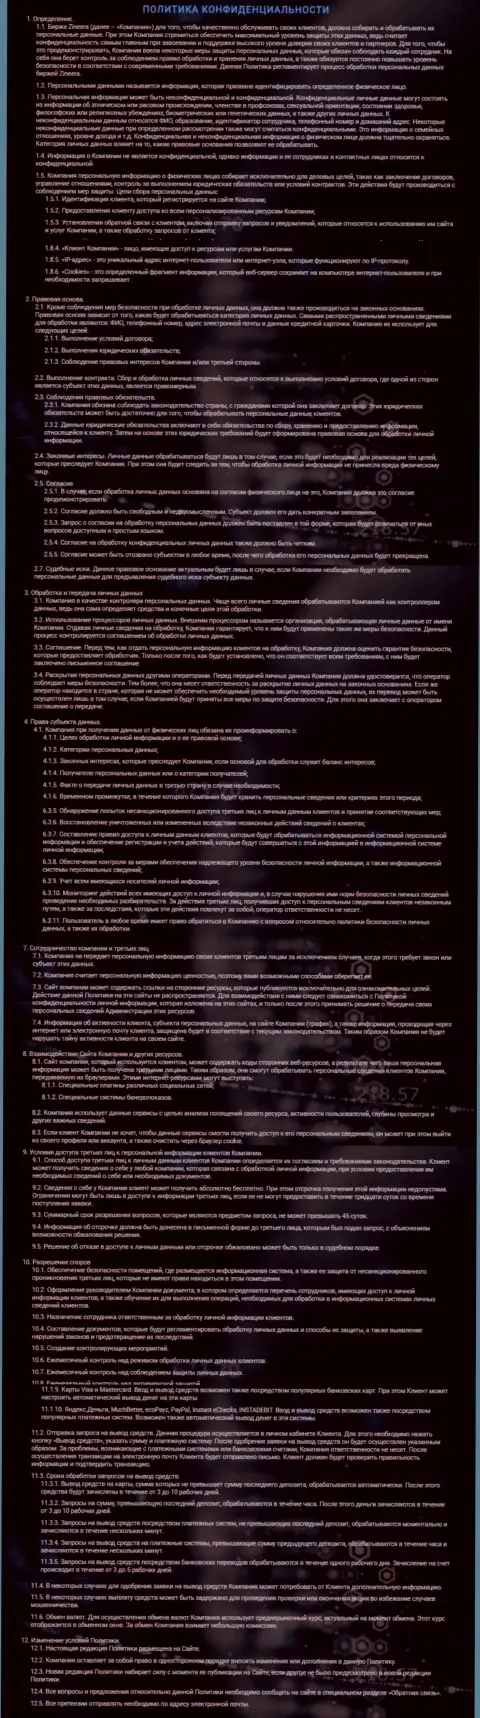 Политика конфиденциальности дилингового центра Зинеера, представленная на официальном сайте